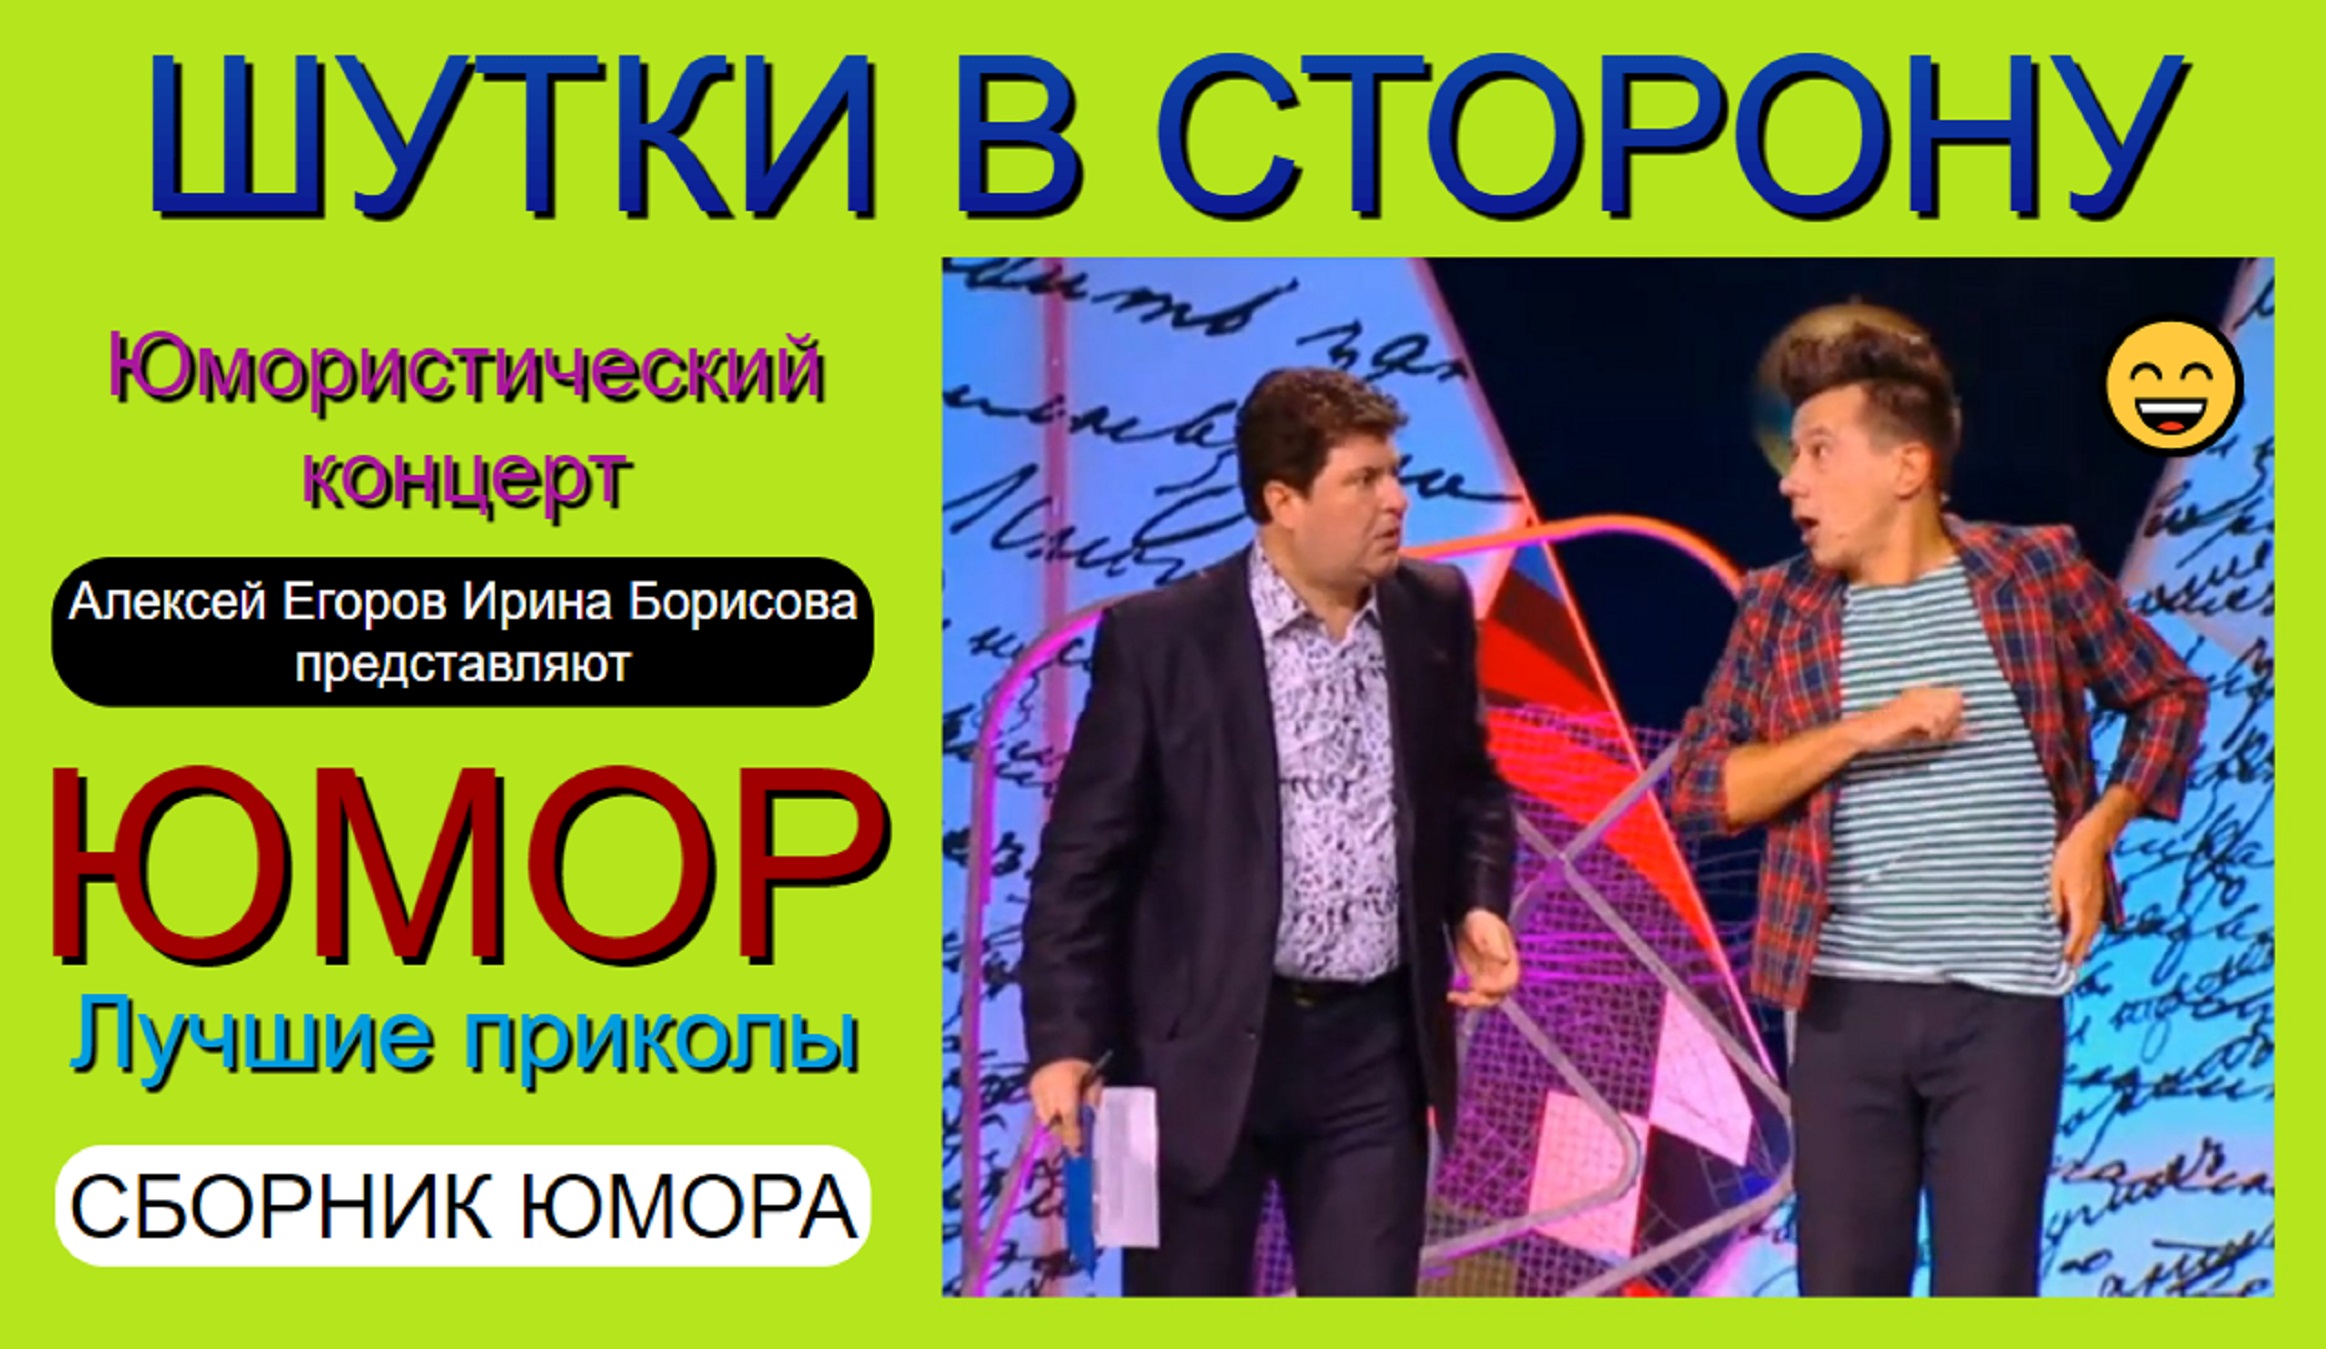 Юмористы Алексей Егоров и Ирина Борисова представляют: "Шутки в сторону"✨🎁🎆 (OFFICIAL VIDEO) #юмор